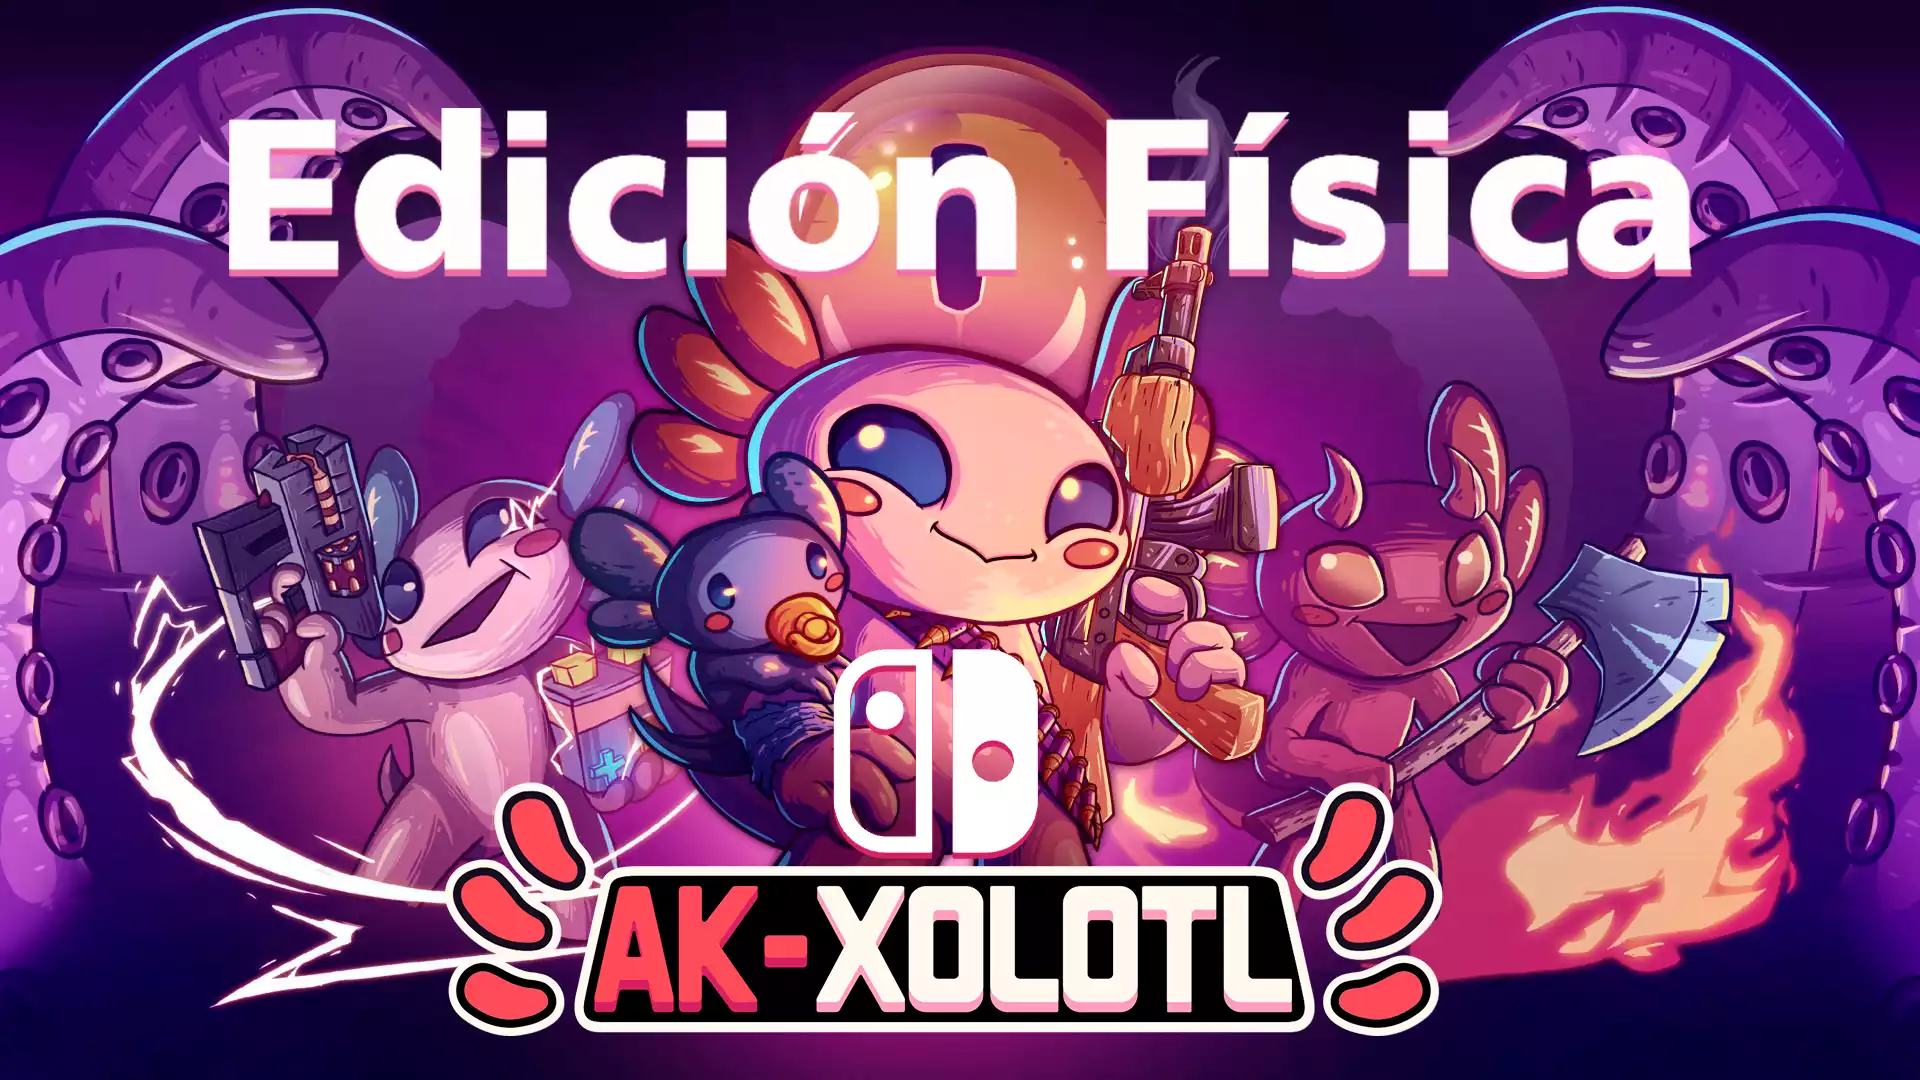 Ak-Xolotl llegara en una edición física chulisima a Nintendo Switch